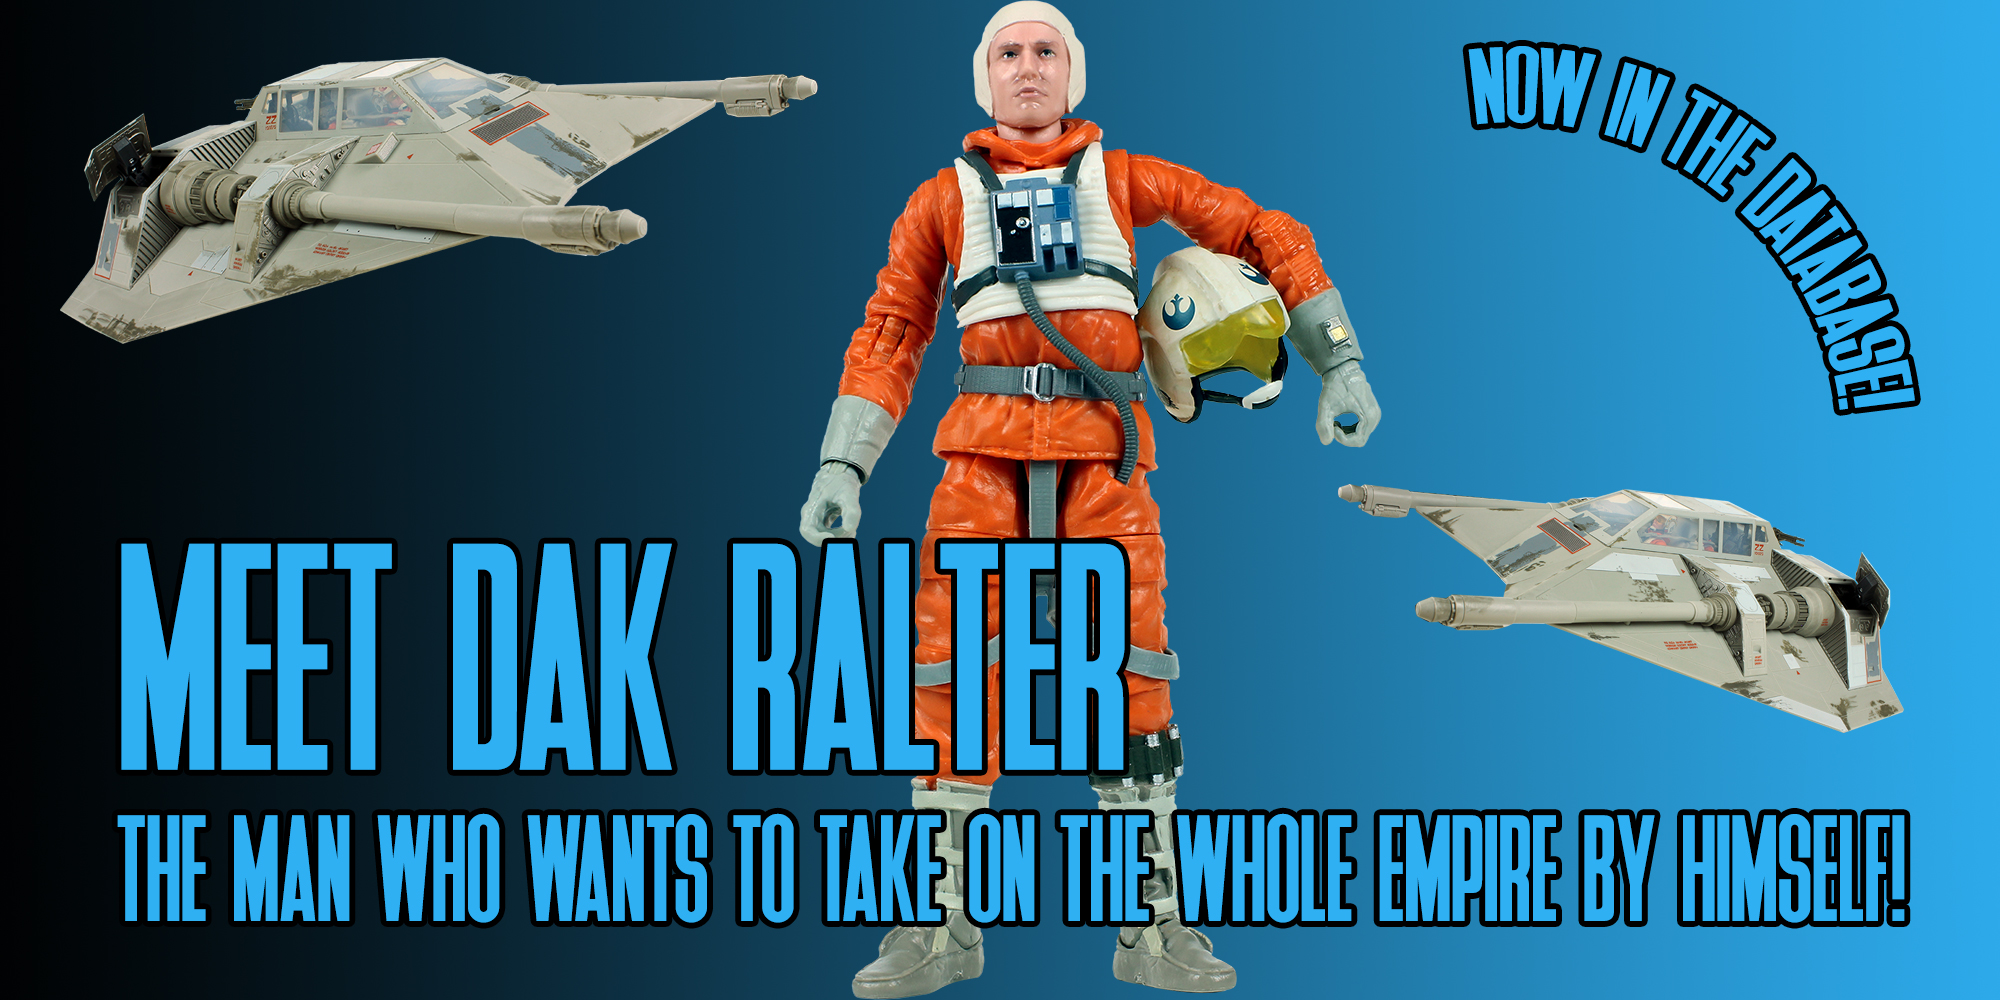 Meet Dak Ralter!